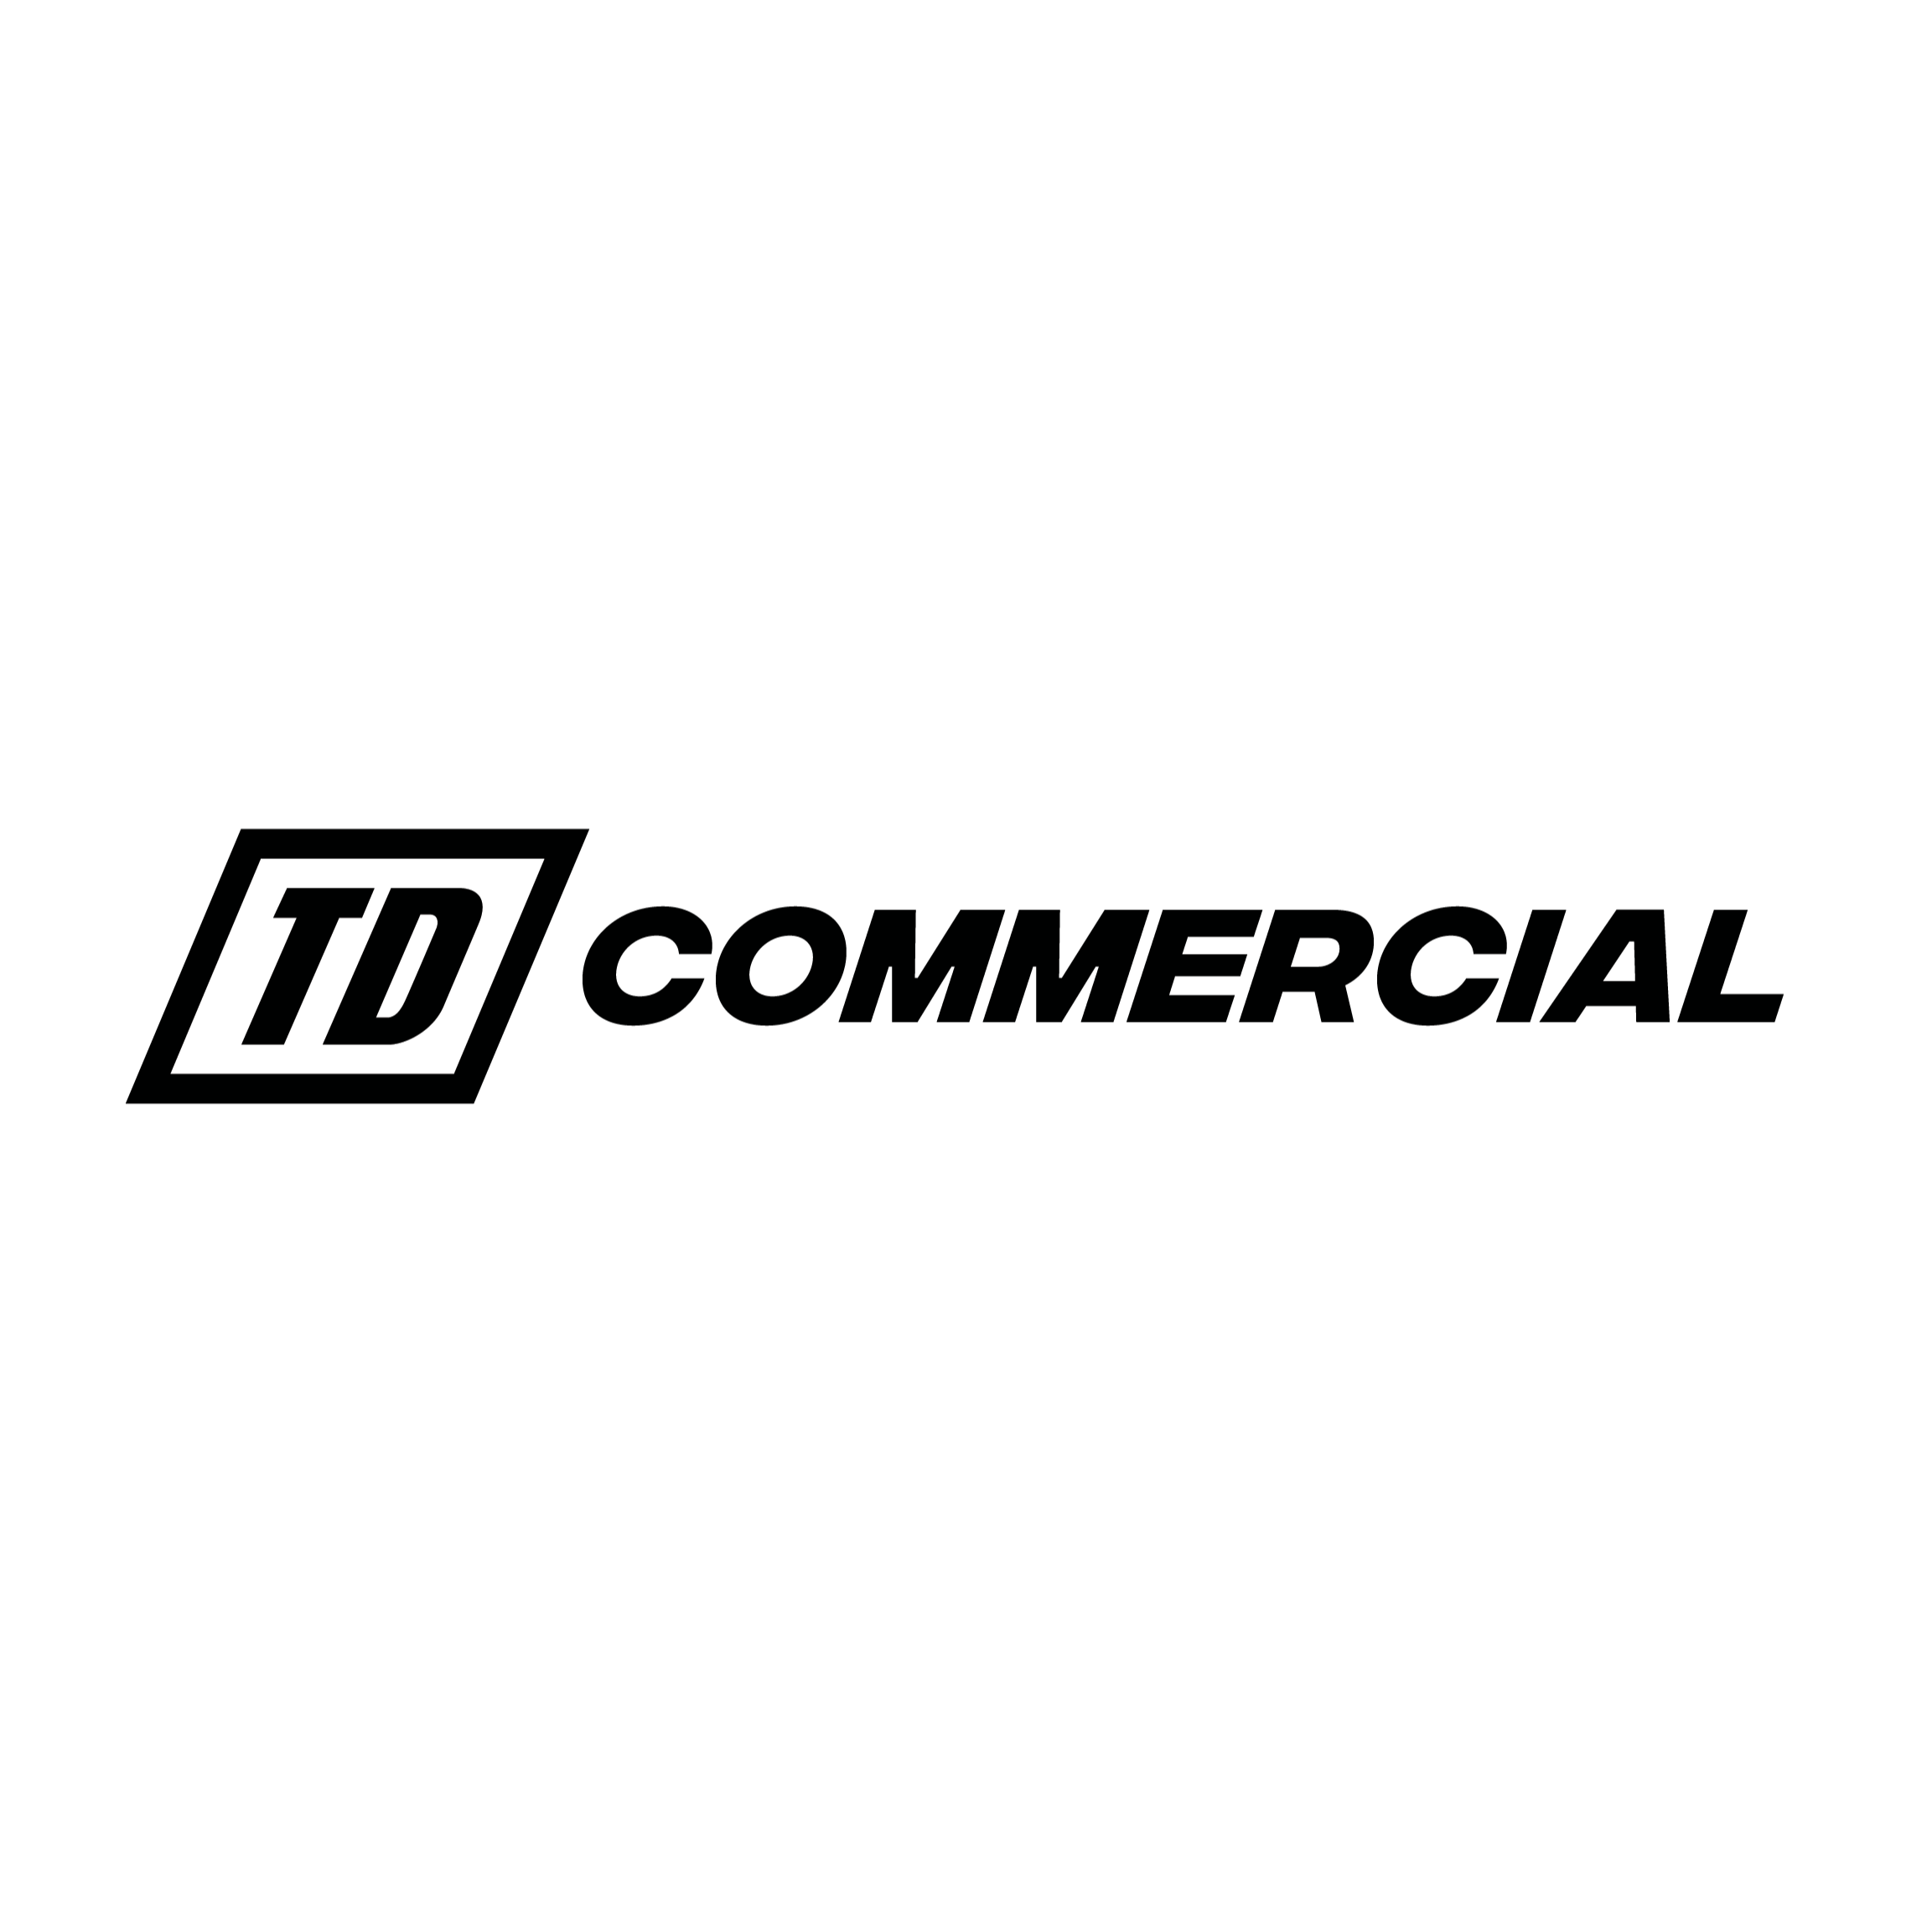 TD Commercial - Monroe, GA 30655 - (678)635-2005 | ShowMeLocal.com